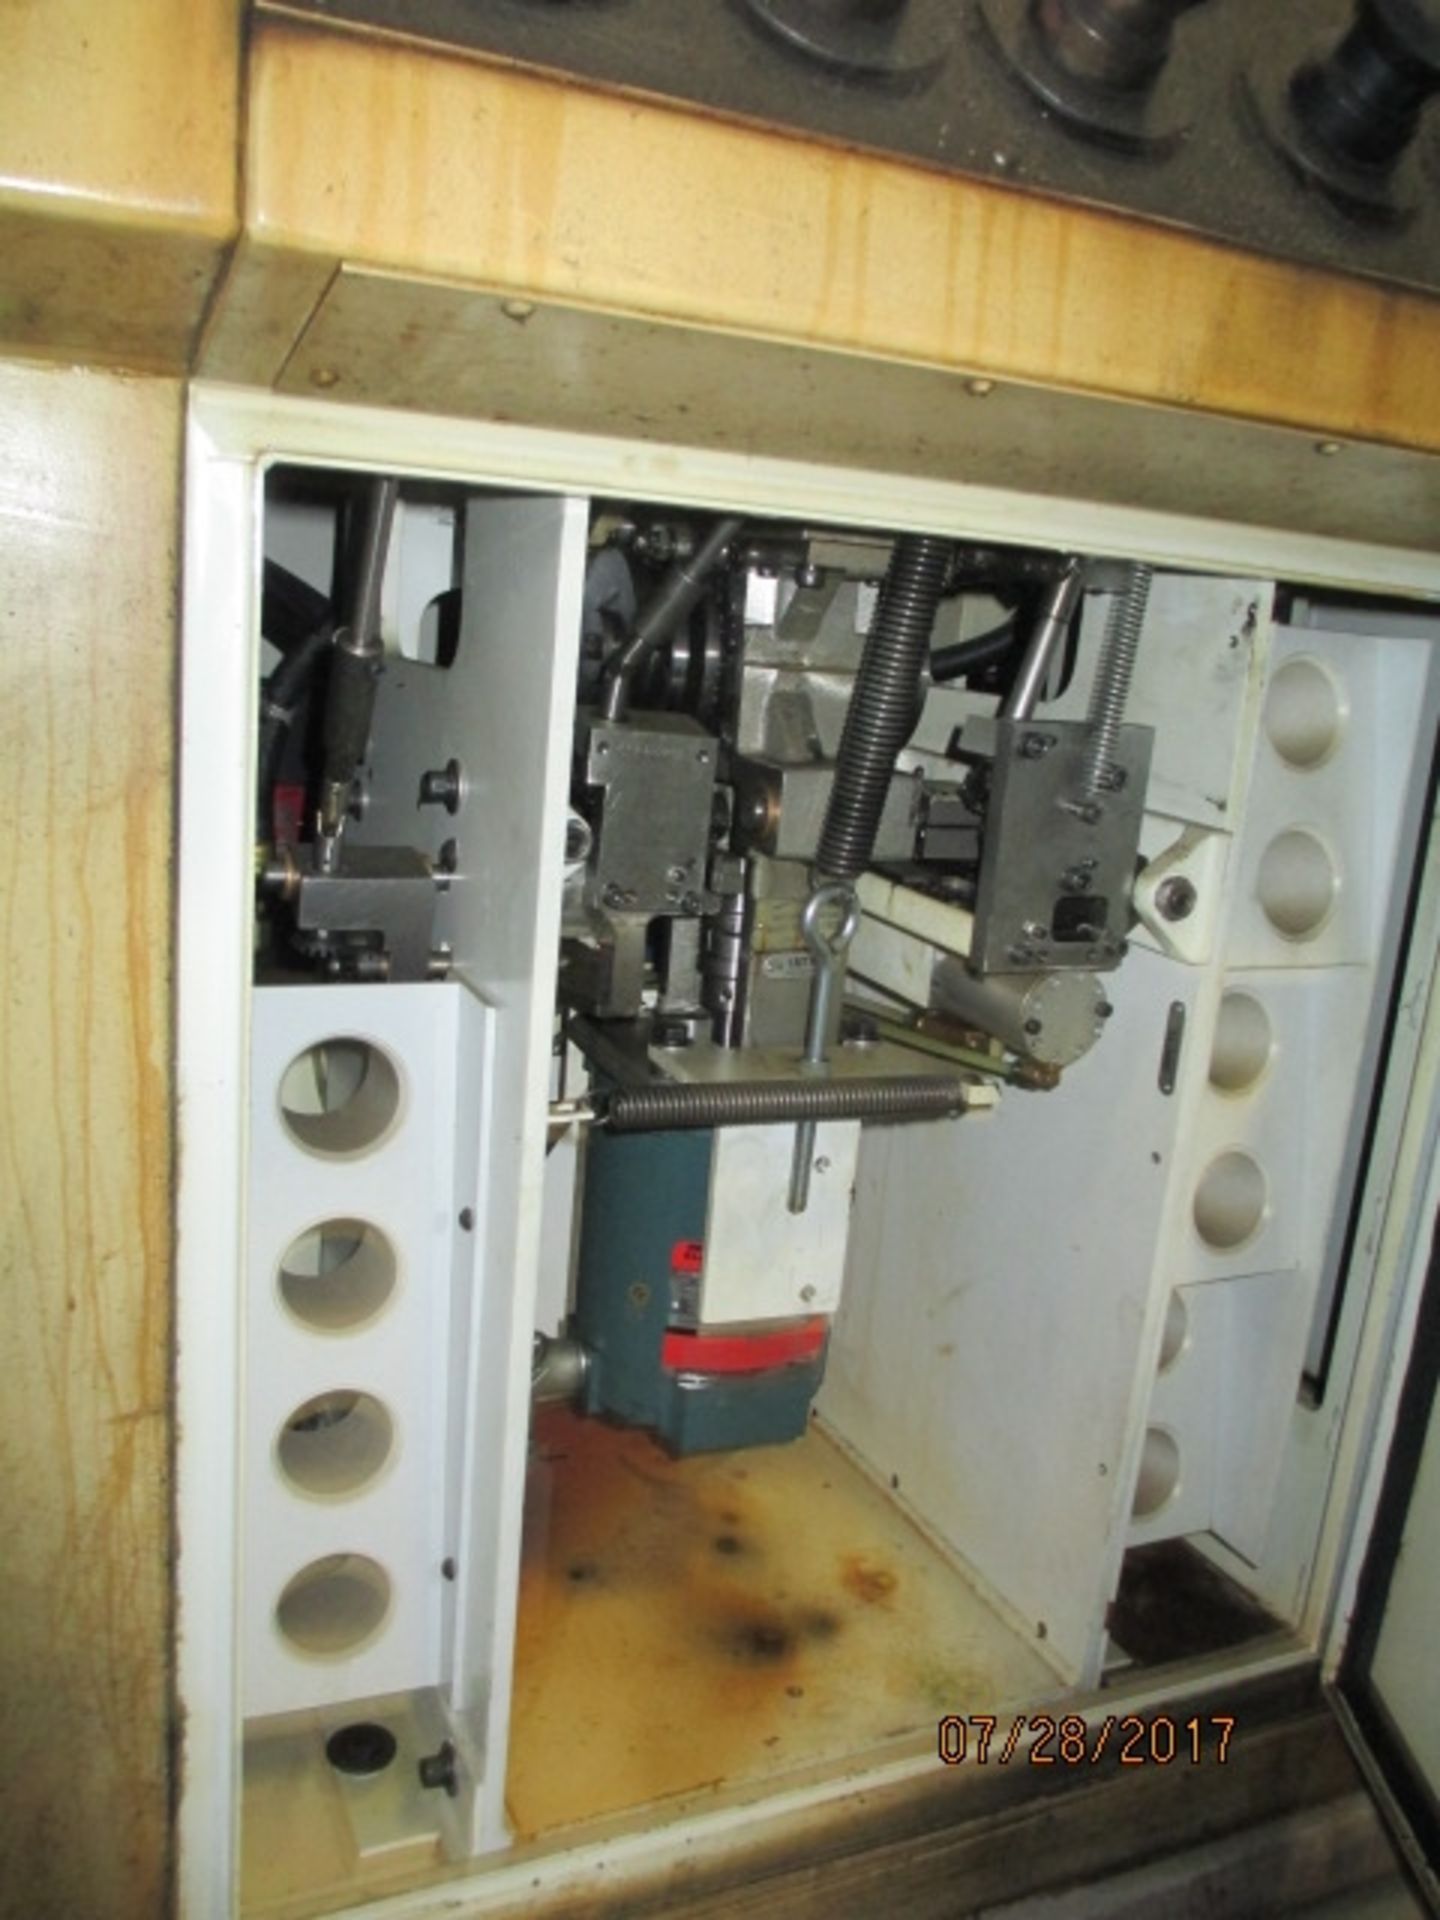 Giddings & Lewis Winslow Model HR Drill Sharpener - Dryden, MI - Image 2 of 4